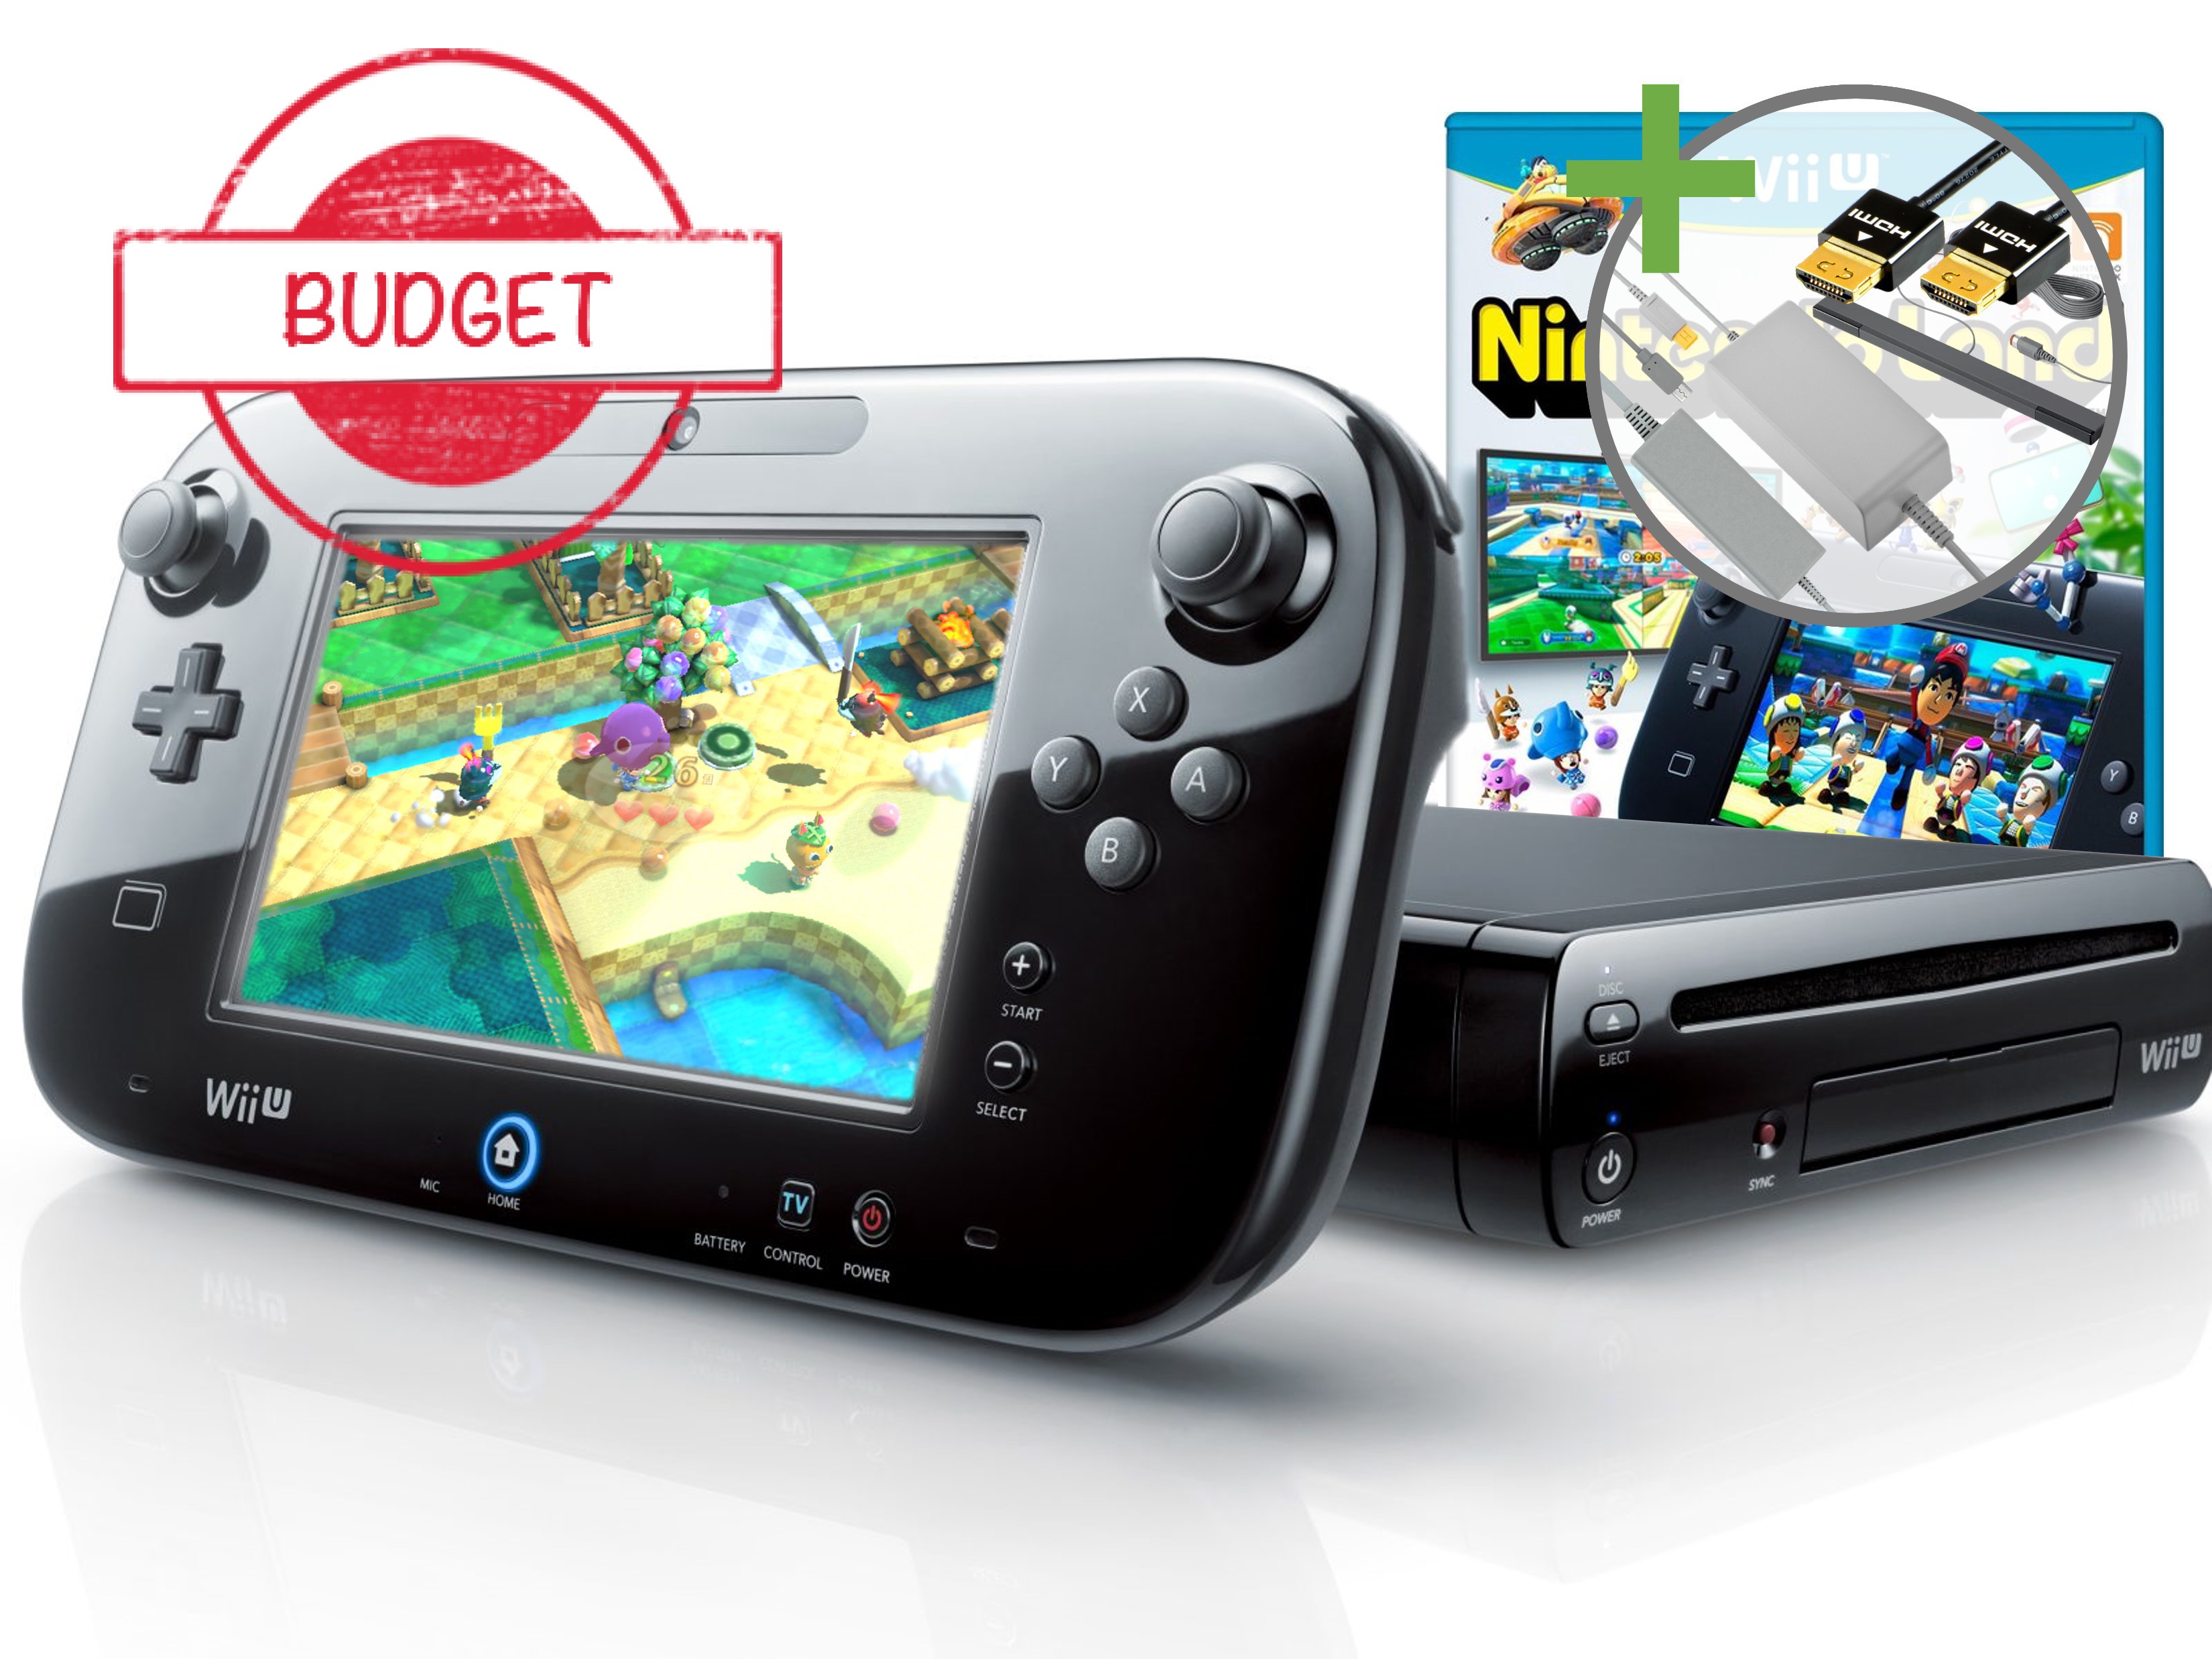 Nintendo Wii U Starter Pack - Deluxe Set Edition - Budget Kopen | Wii U Hardware